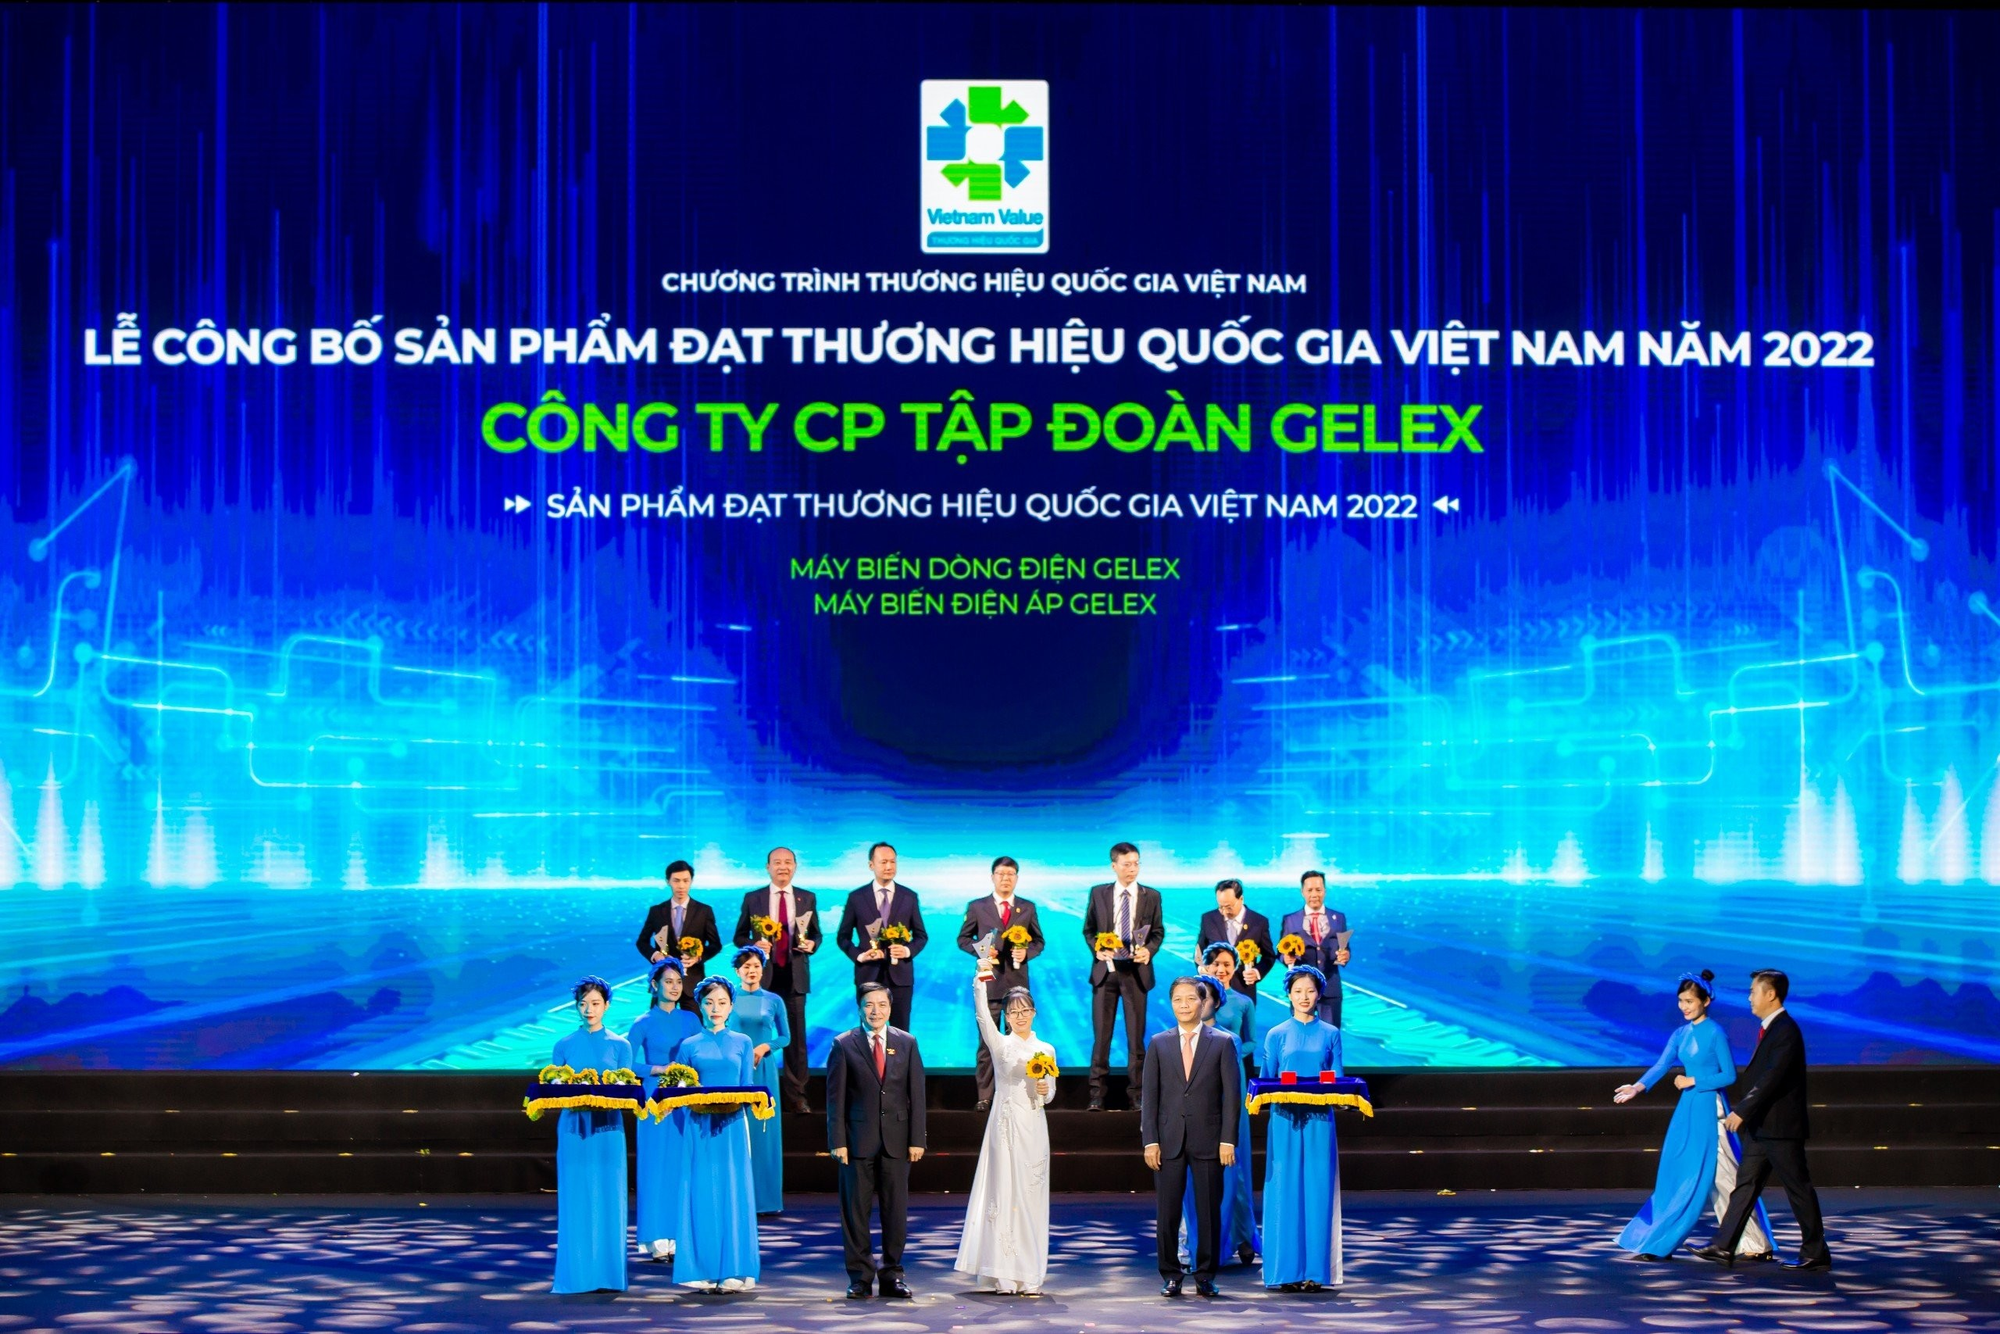 Đại diện GELEX nhận Biểu trưng Thương hiệu Quốc gia Việt Nam năm 2022.